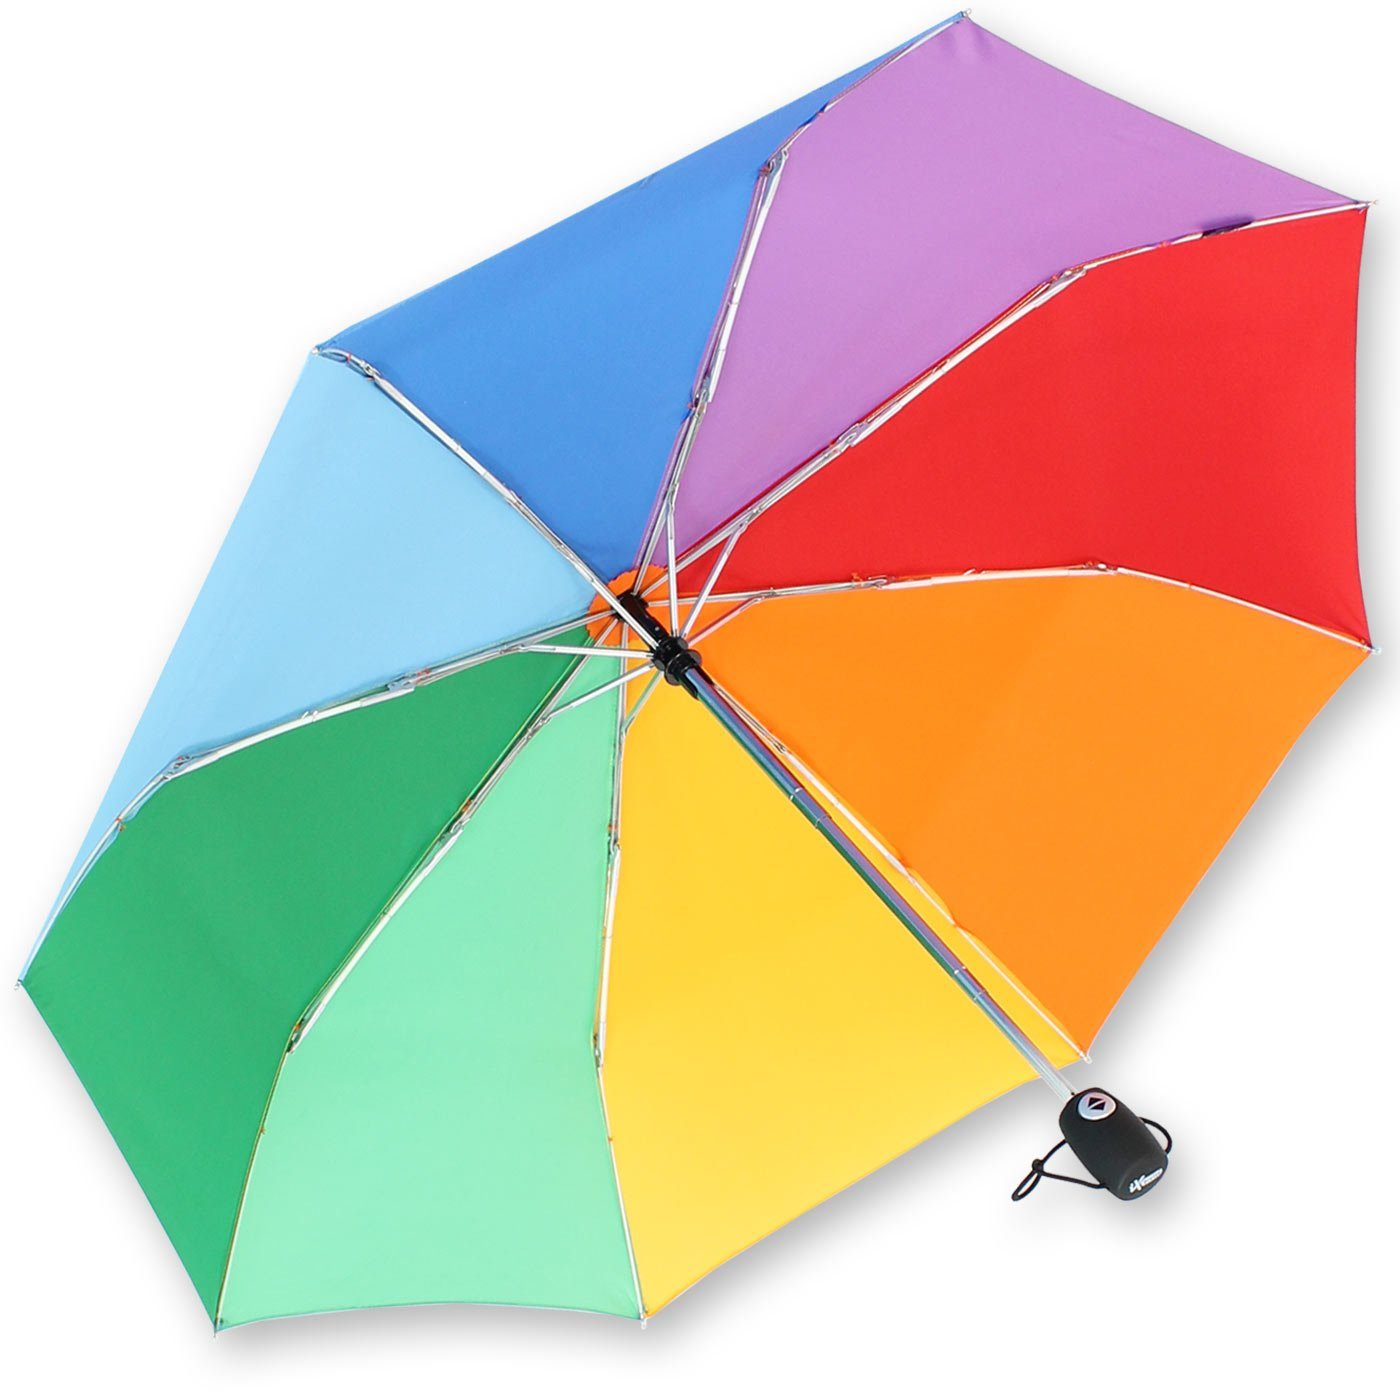 Damen Regenschirme iX-brella Taschenregenschirm Mini Regenbogenschirm leicht mit Auf-Zu-Automatik, bringt Farbe in den grauen Re